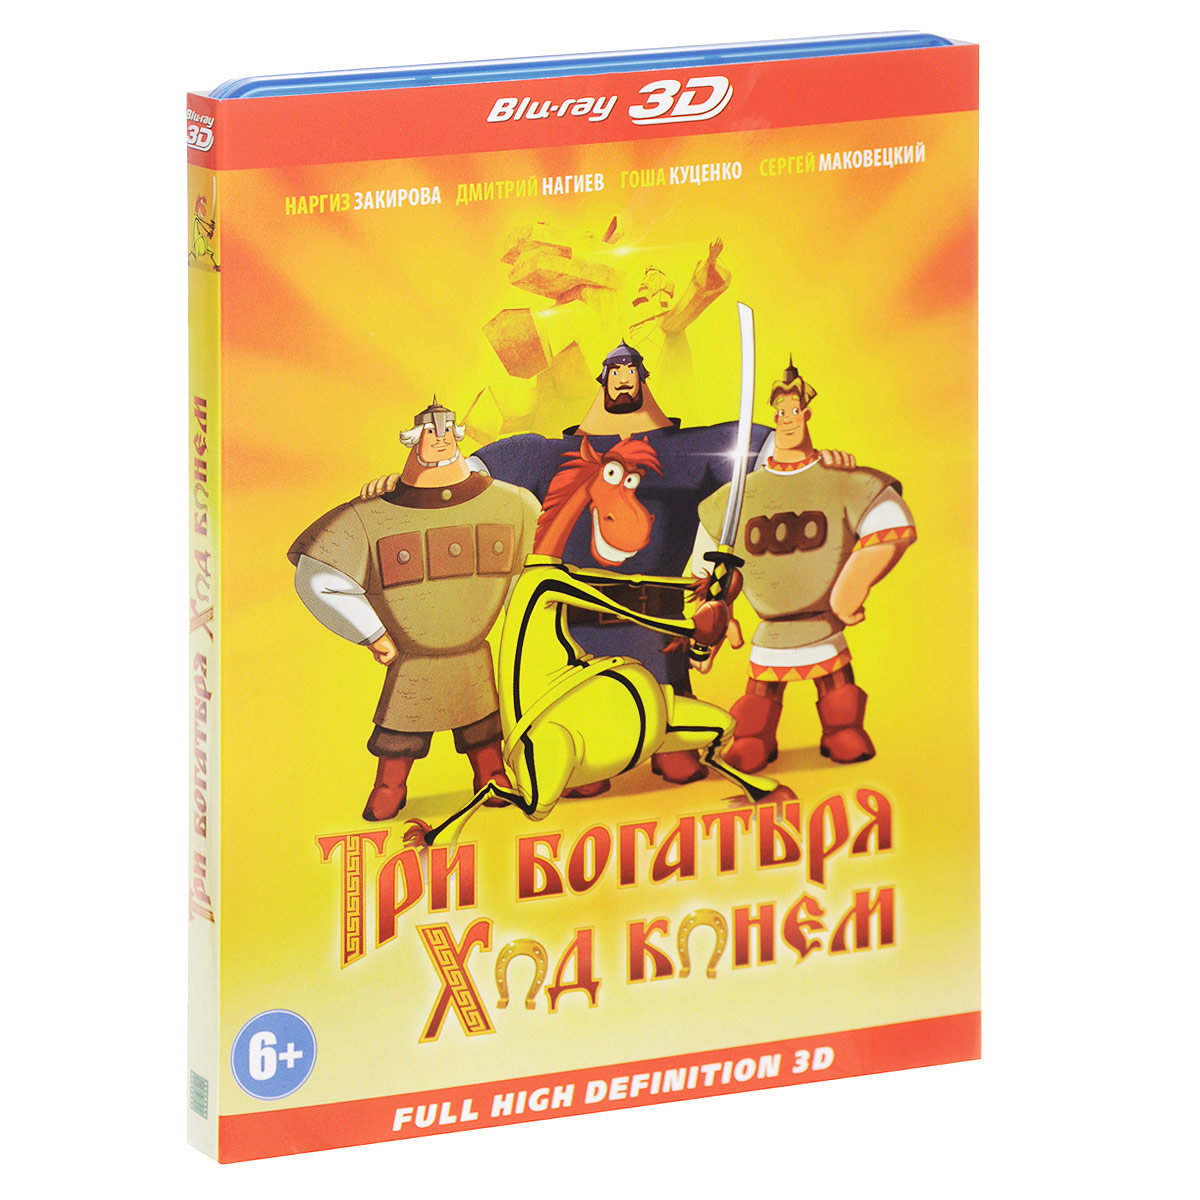 Три богатыря: Ход конем 3D (Blu-ray)